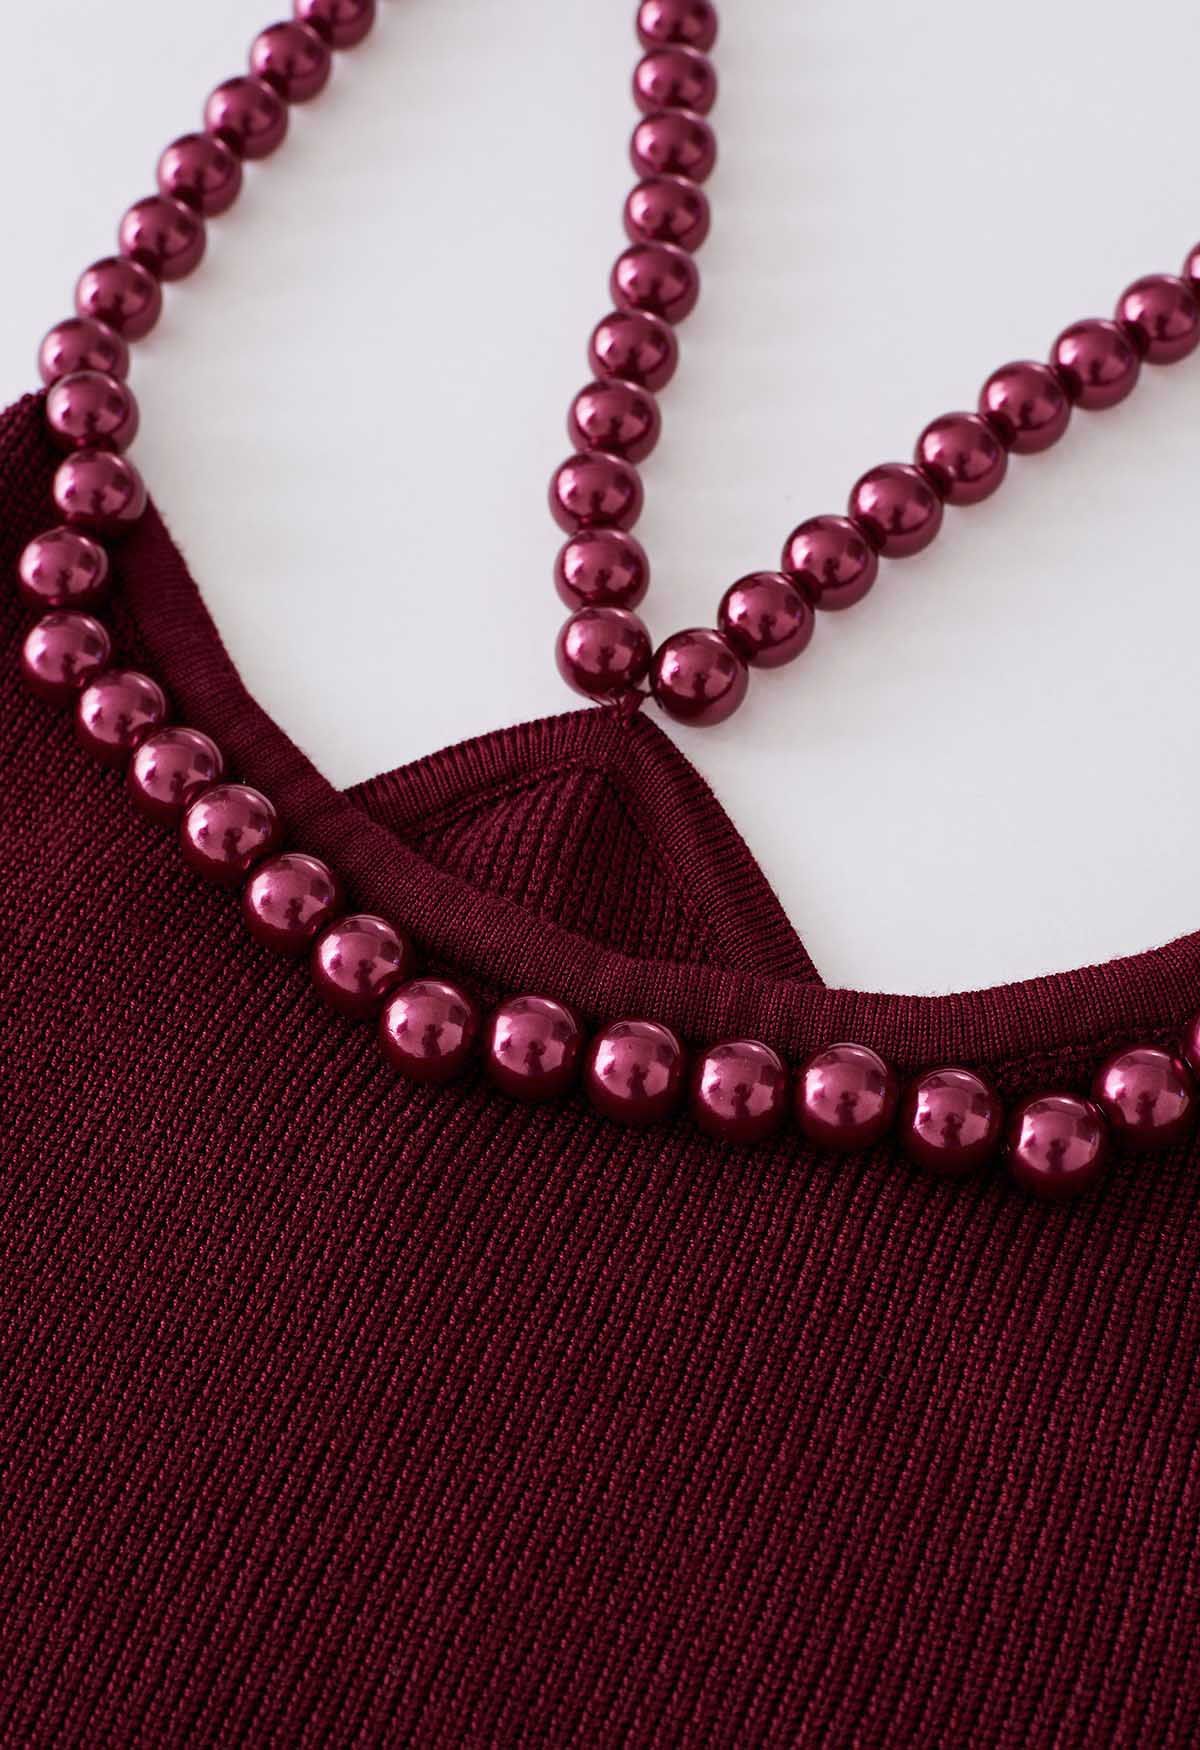 Crop top en tricot à bretelles perlées en rouge